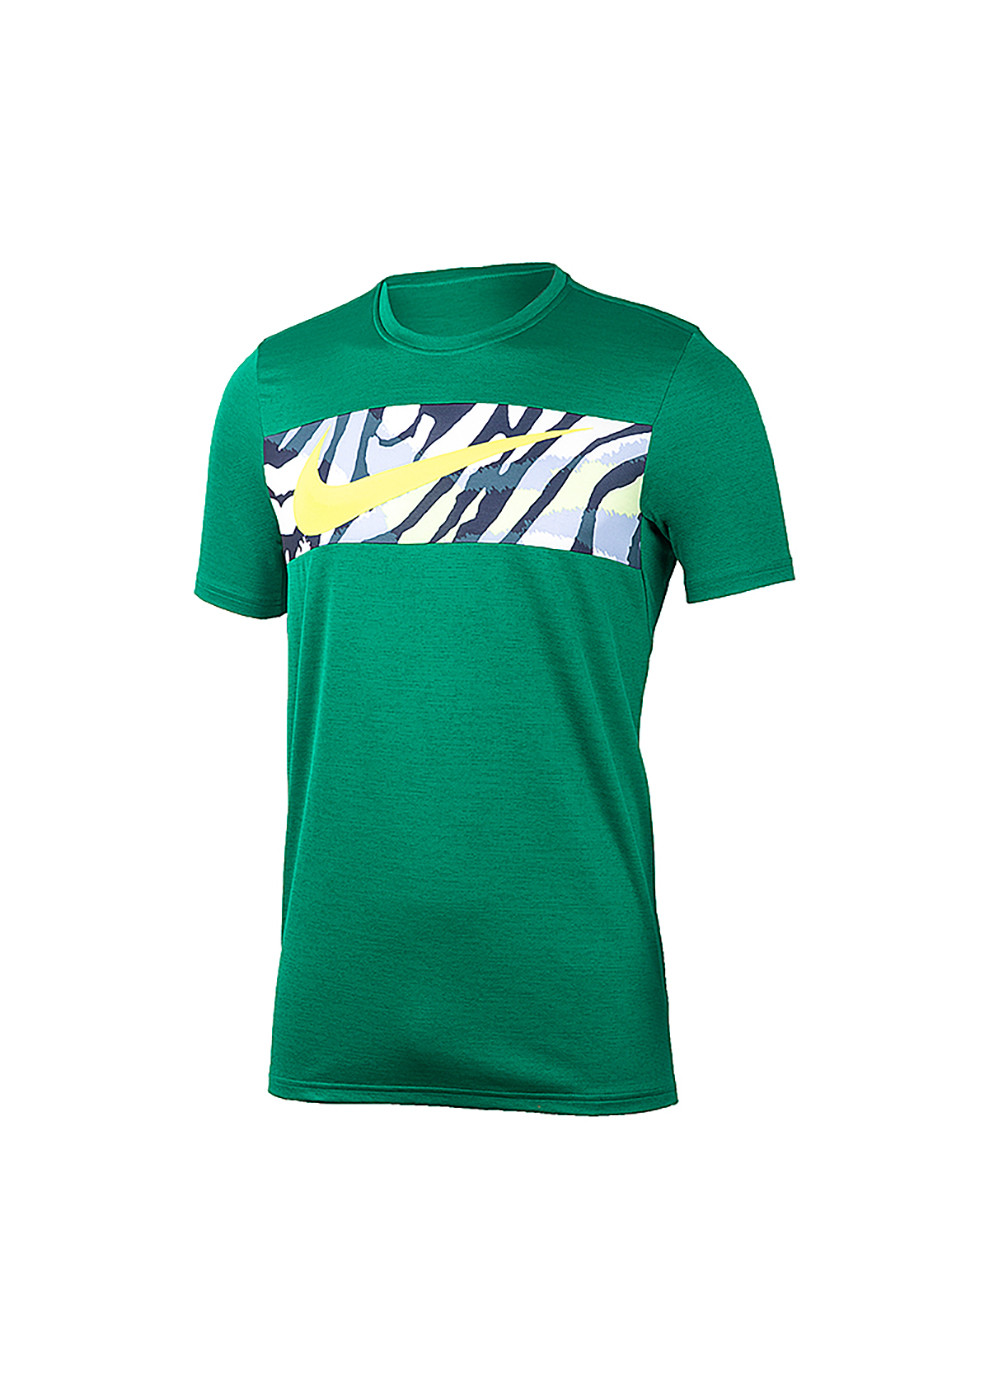 Зелена чоловіча футболка m mk df sc top 4 s (dm6511-365 s) Nike